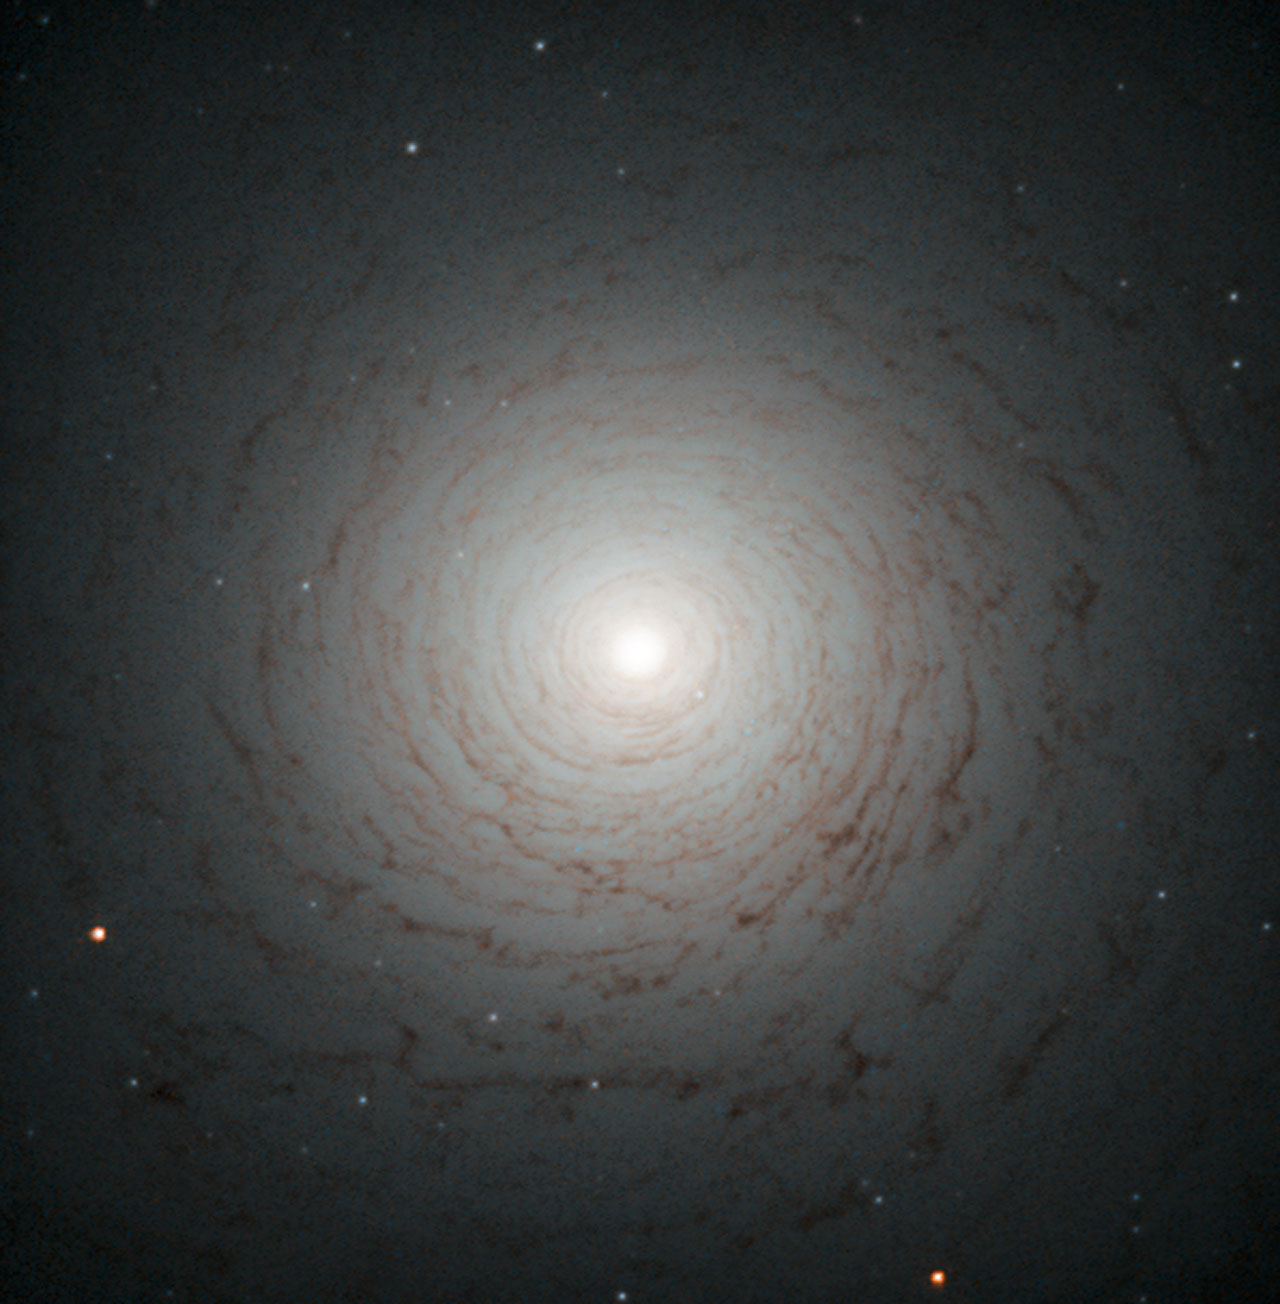 See larger image  Image credit: ESA/Hubble & NASA